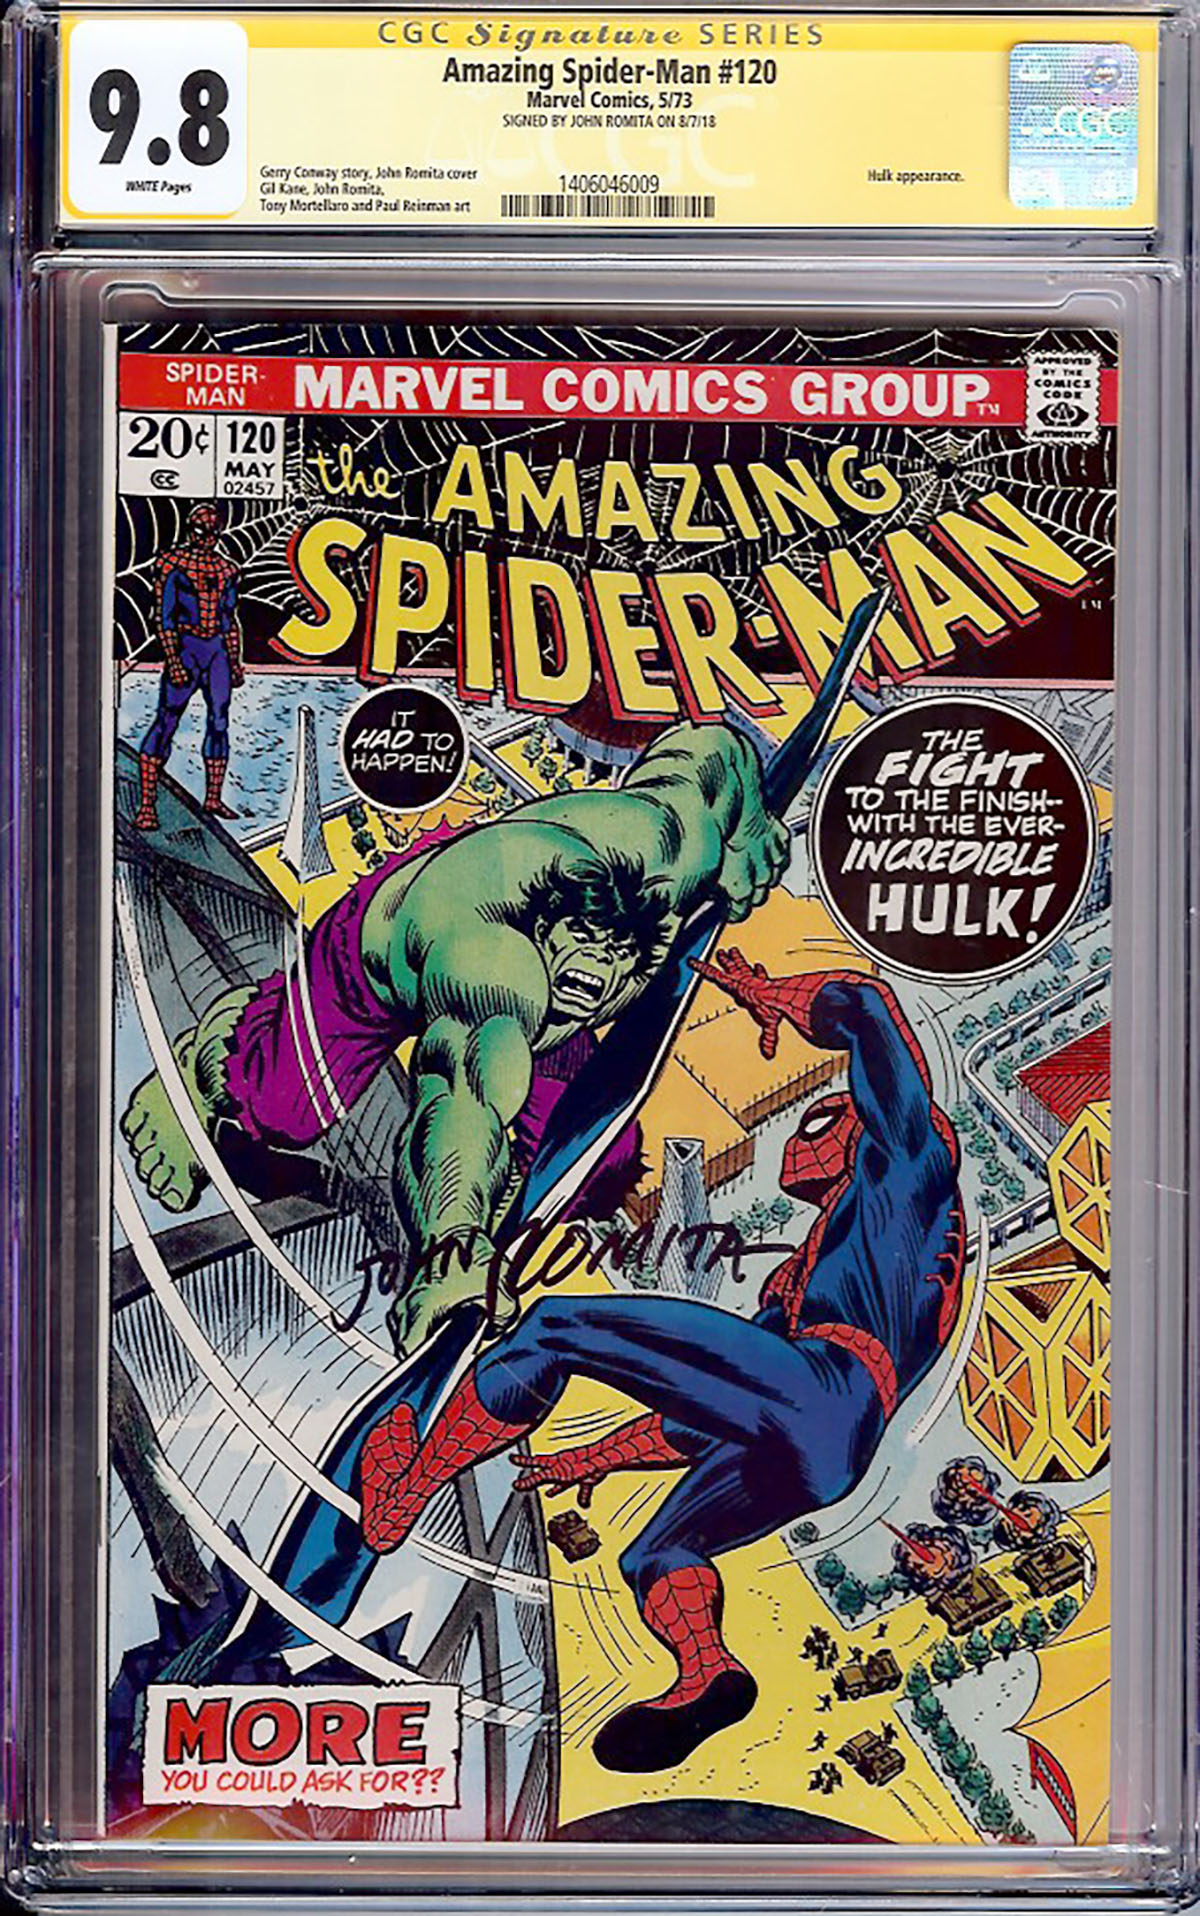 Amazing Spider-Man #120 CGC 9.8 w CGC Signature SERIES